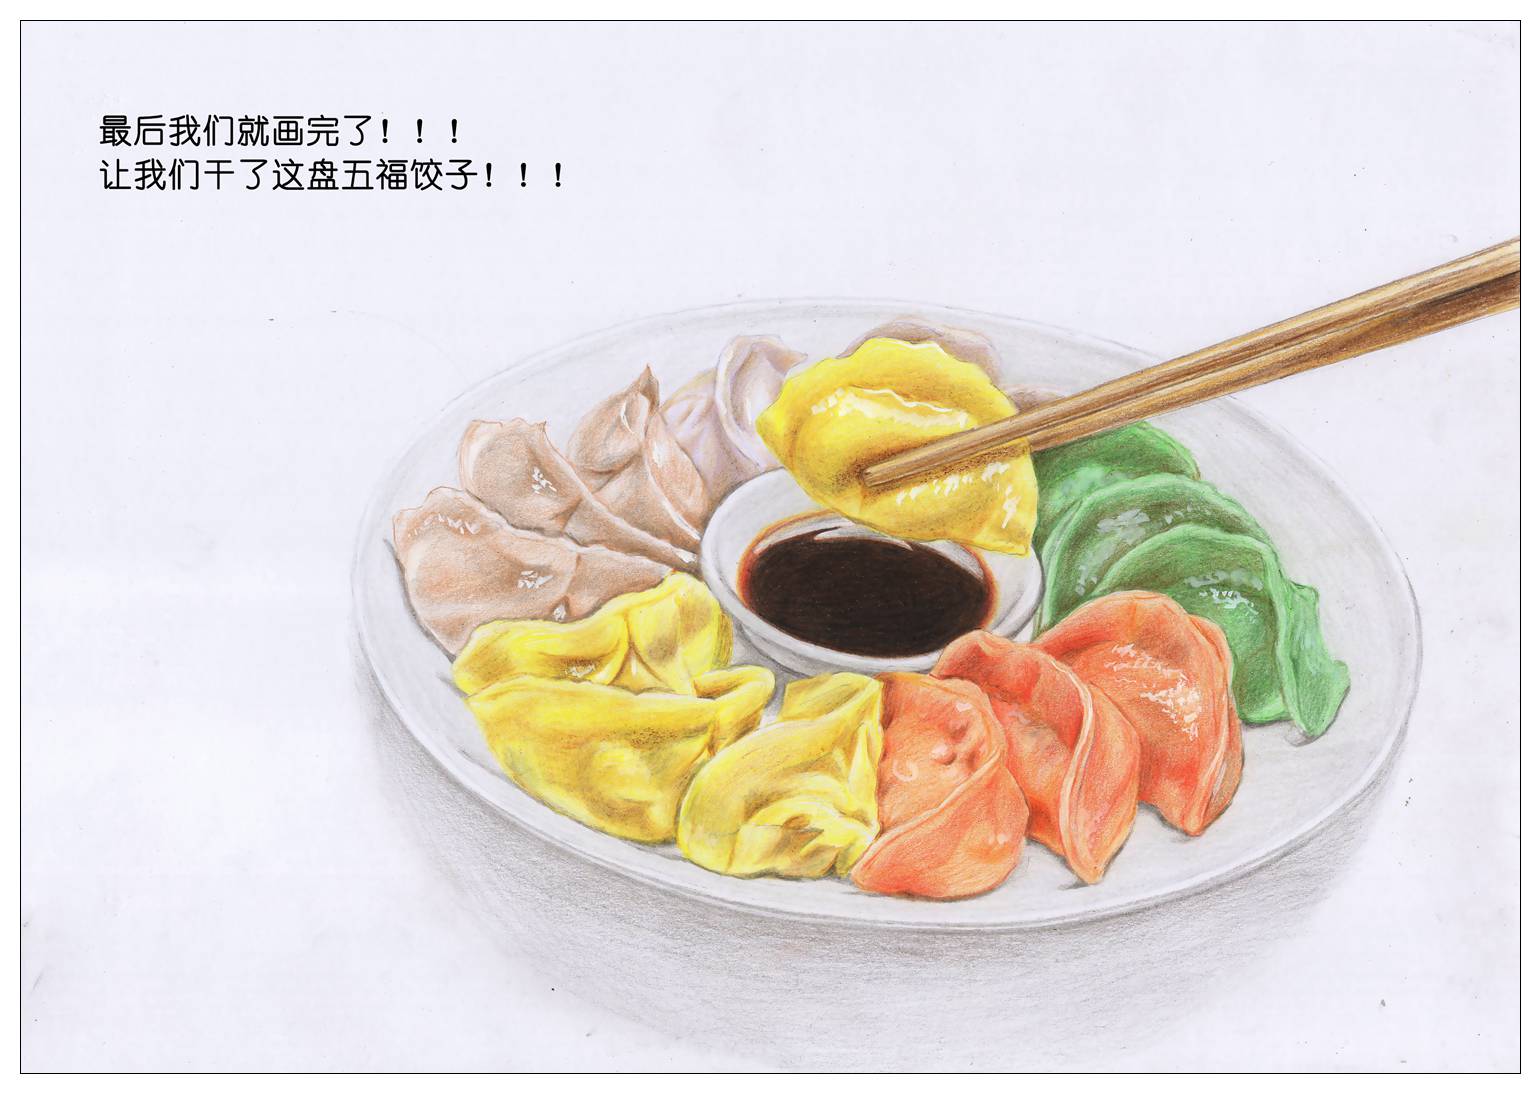 饺子彩铅图片